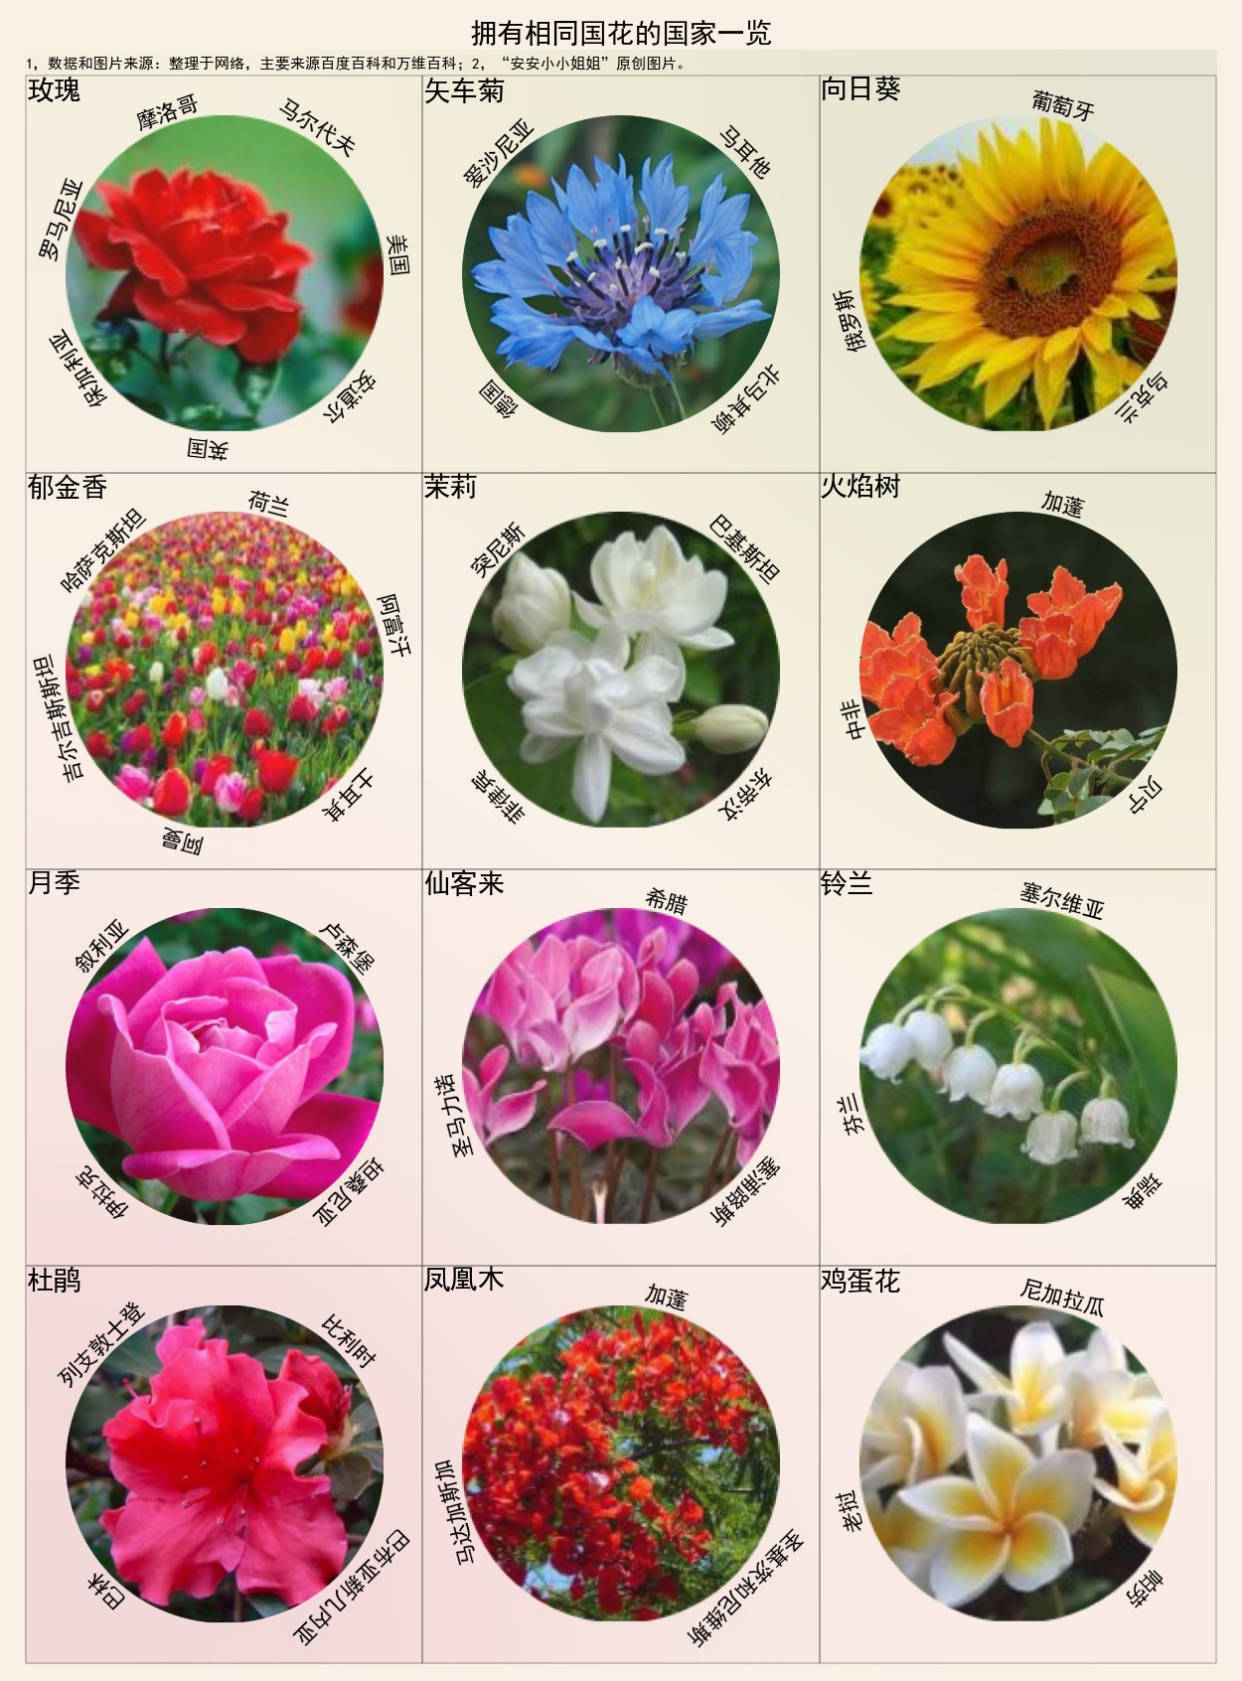 各国国花一览如果要在牡丹和梅花中选你选哪个做国花